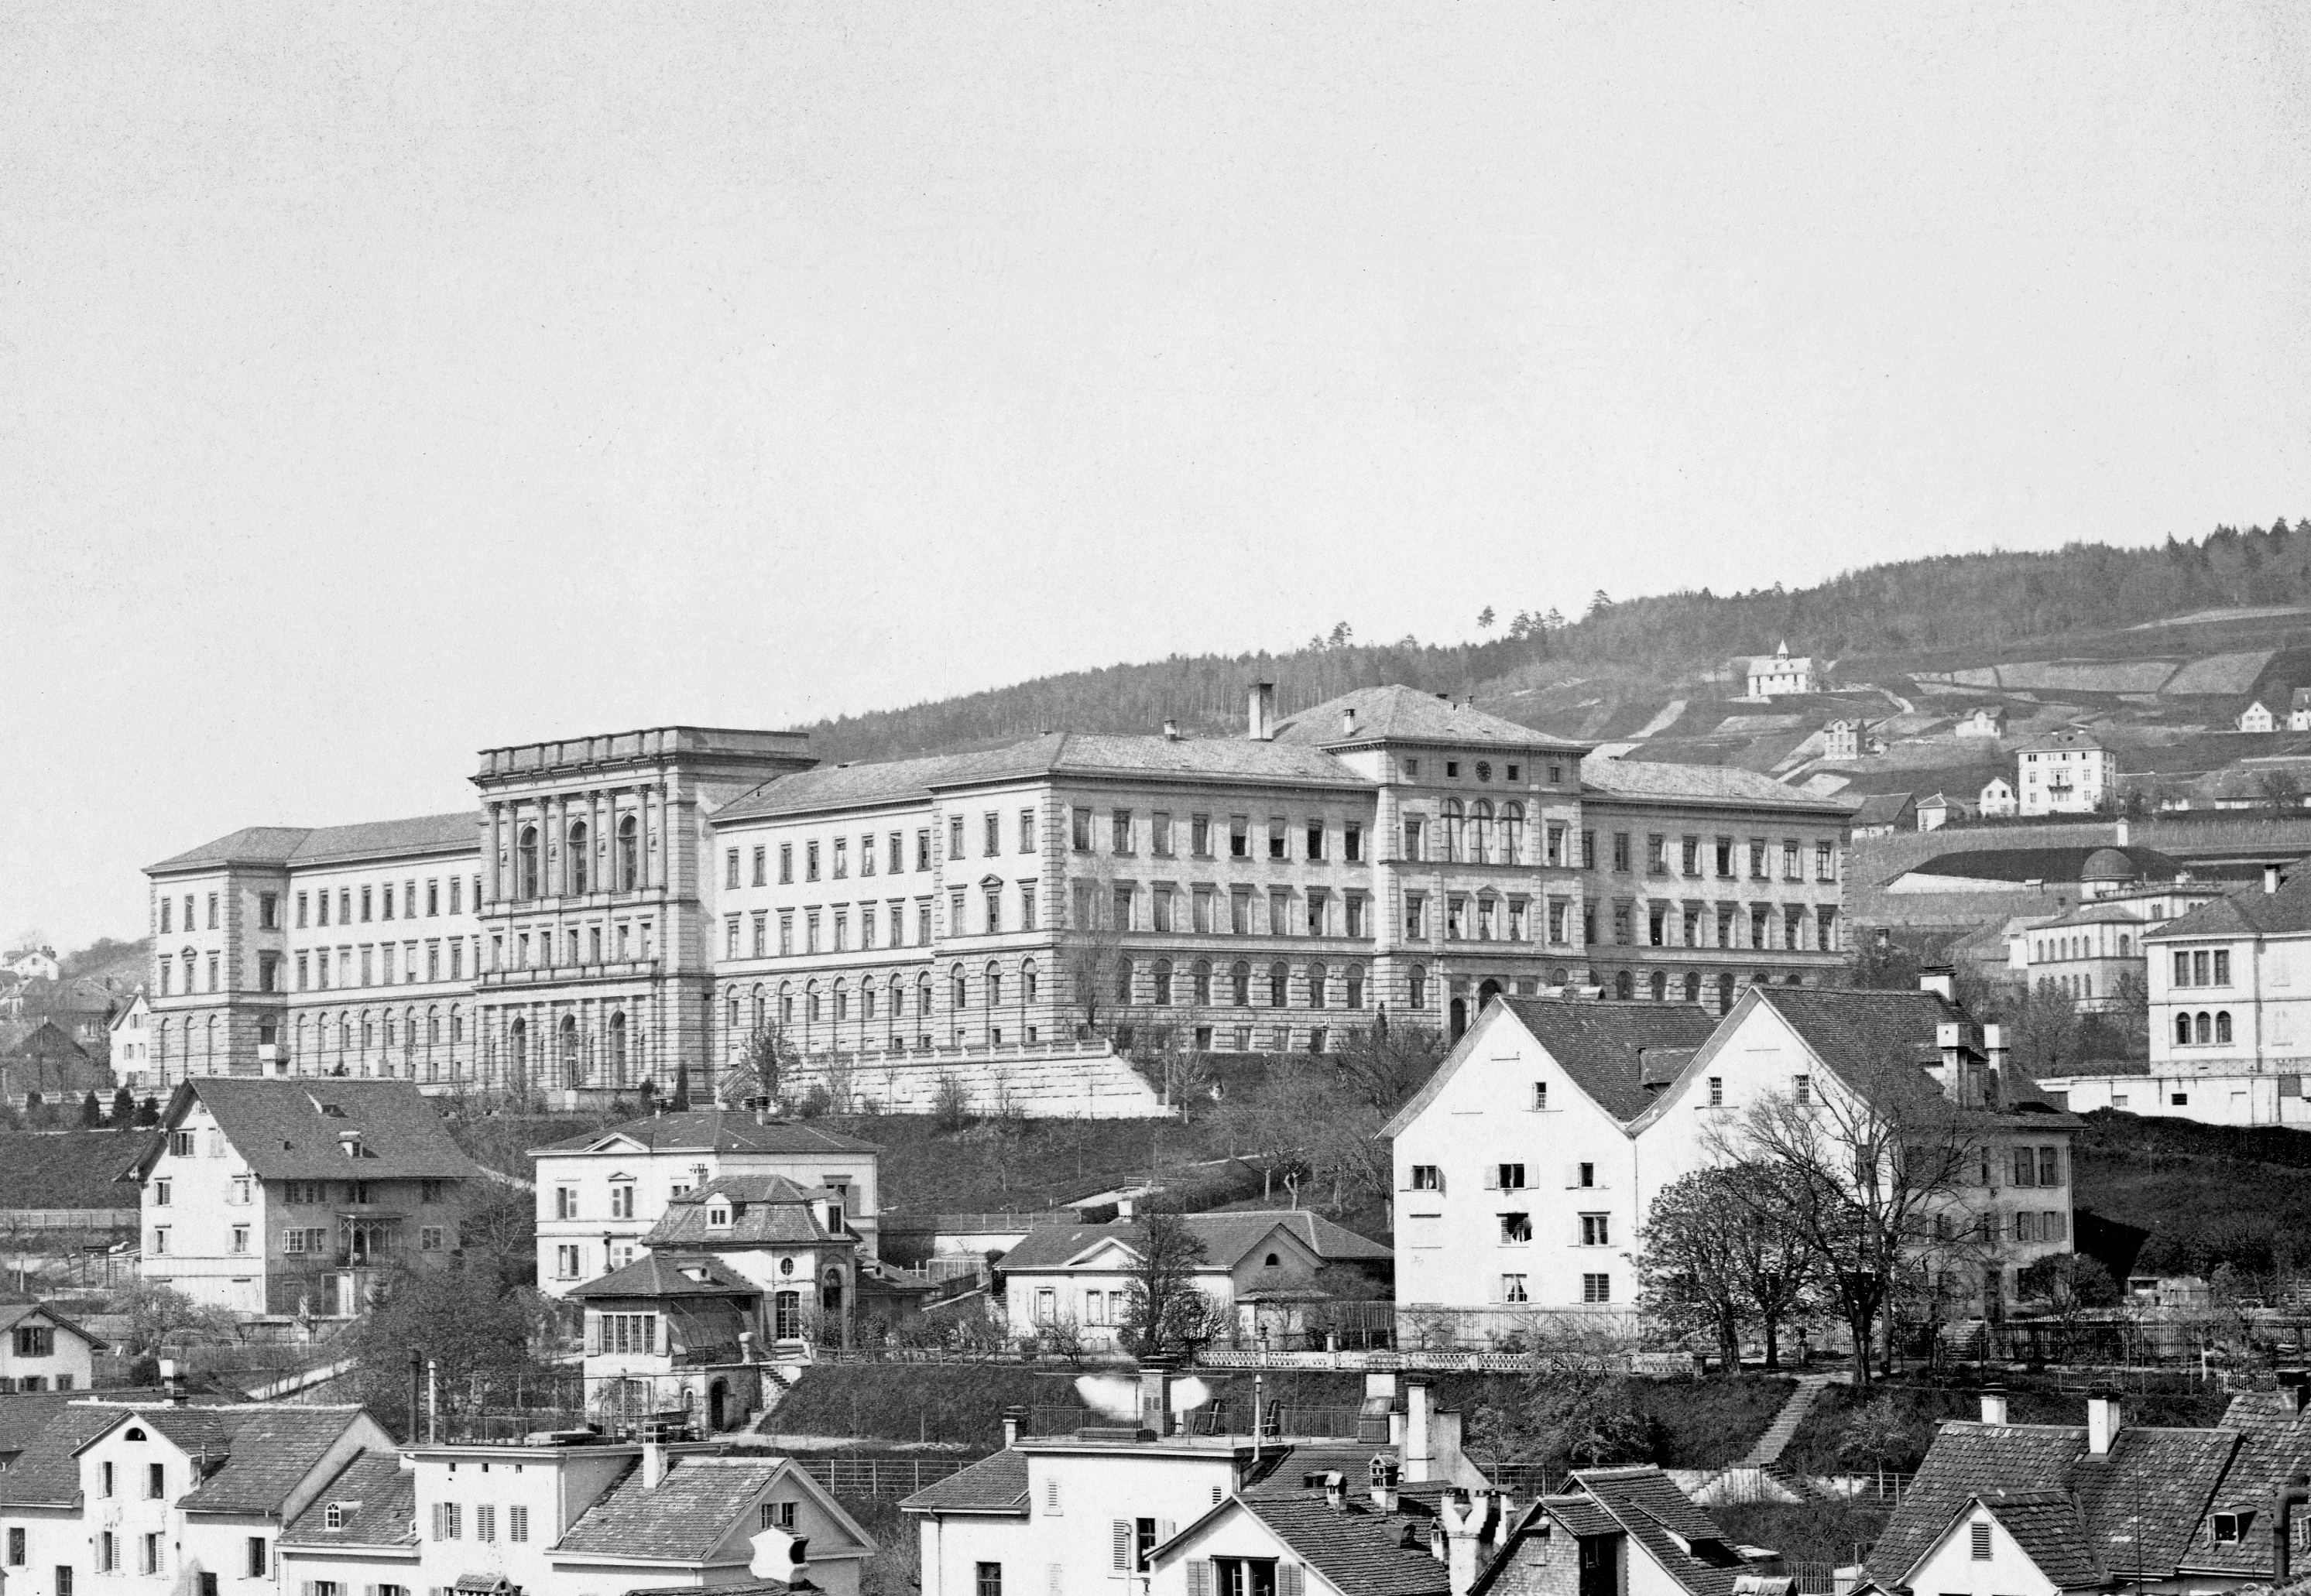 Vue du bâtiment de l’École polytechnique fédérale vers 1880